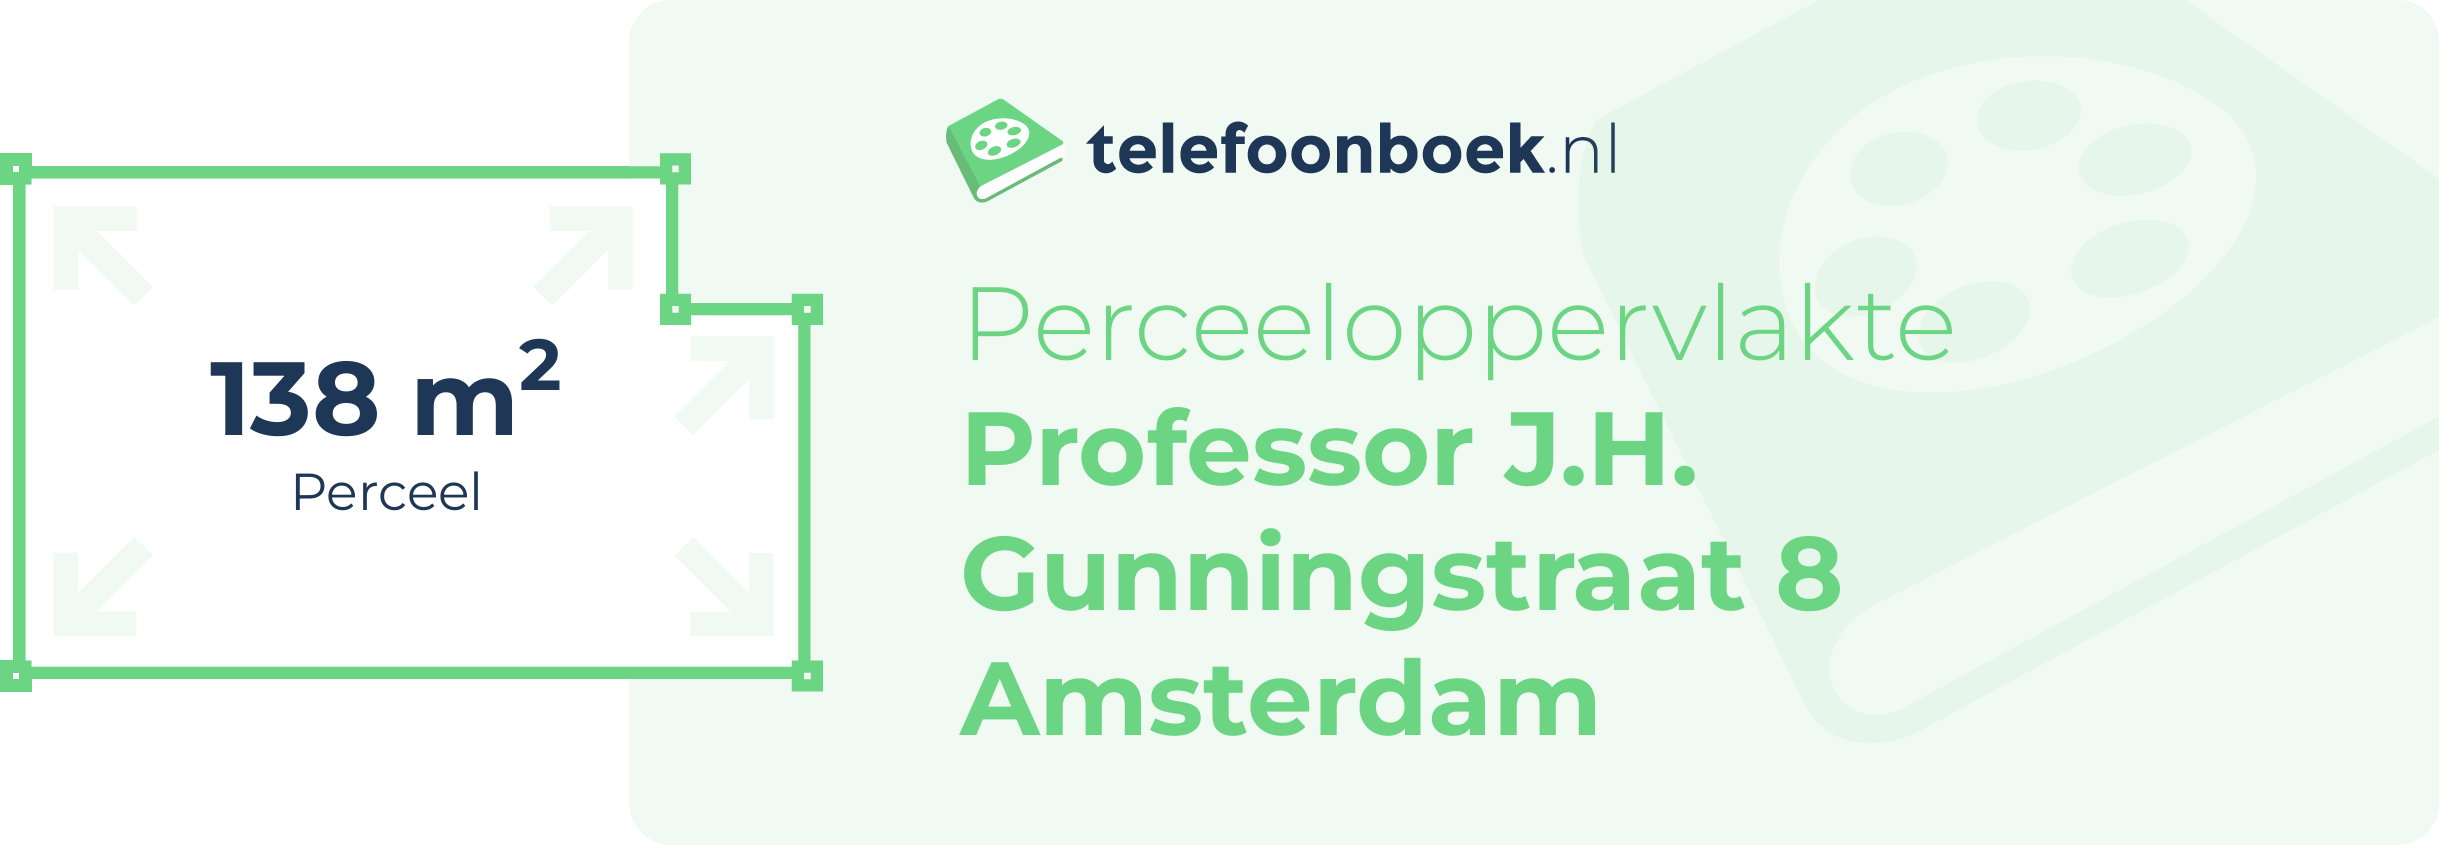 Perceeloppervlakte Professor J.H. Gunningstraat 8 Amsterdam